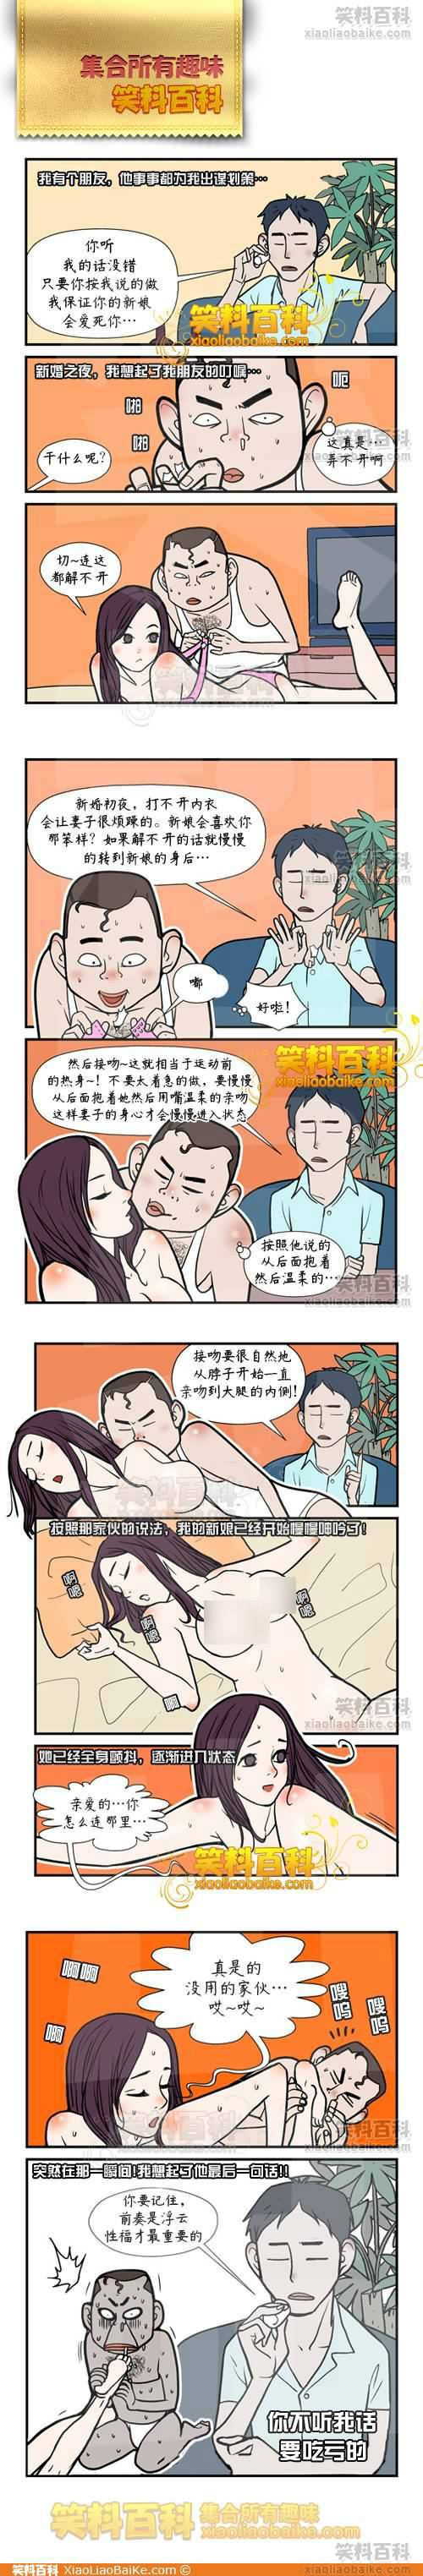 邪恶漫画爆笑囧图第262刊：脑袋与头发的功能